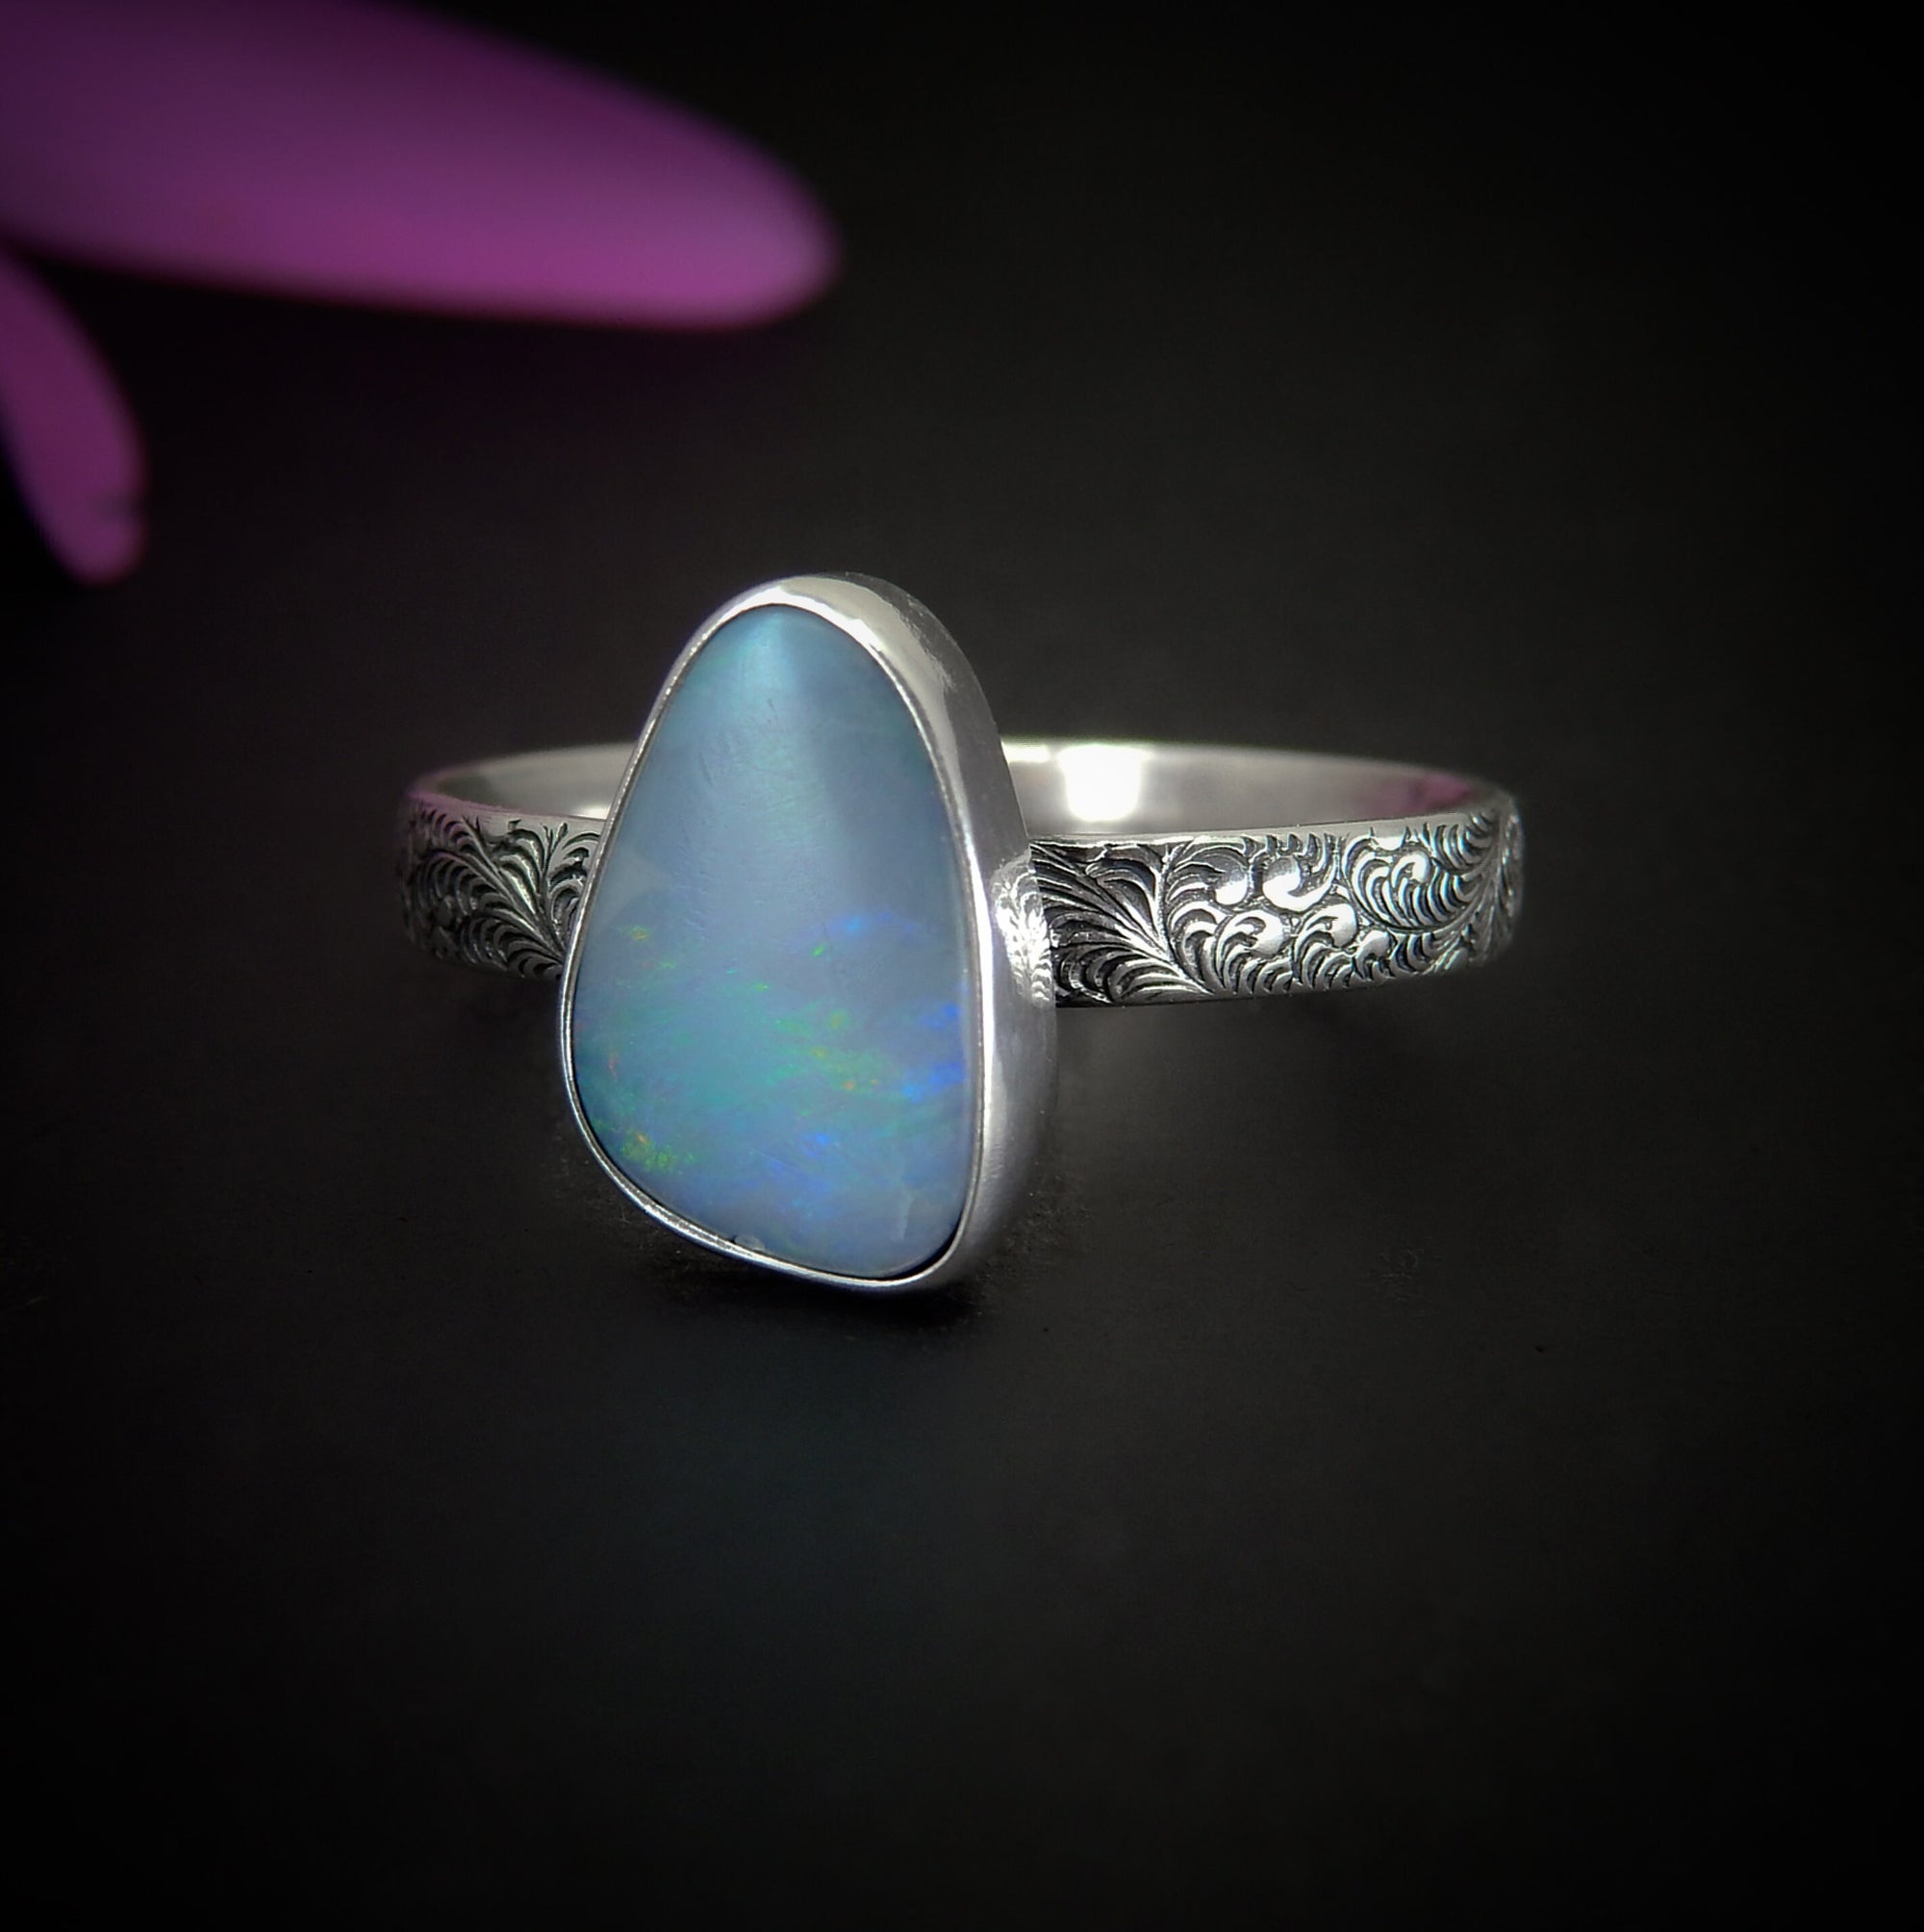 Australian Opal Ring - Size 11 1/4 to 11 1/2 - Sterling Silver - Lightning Ridge Opal Ring, Dainty Opal Jewelry, Blue Australian Opal OOAK